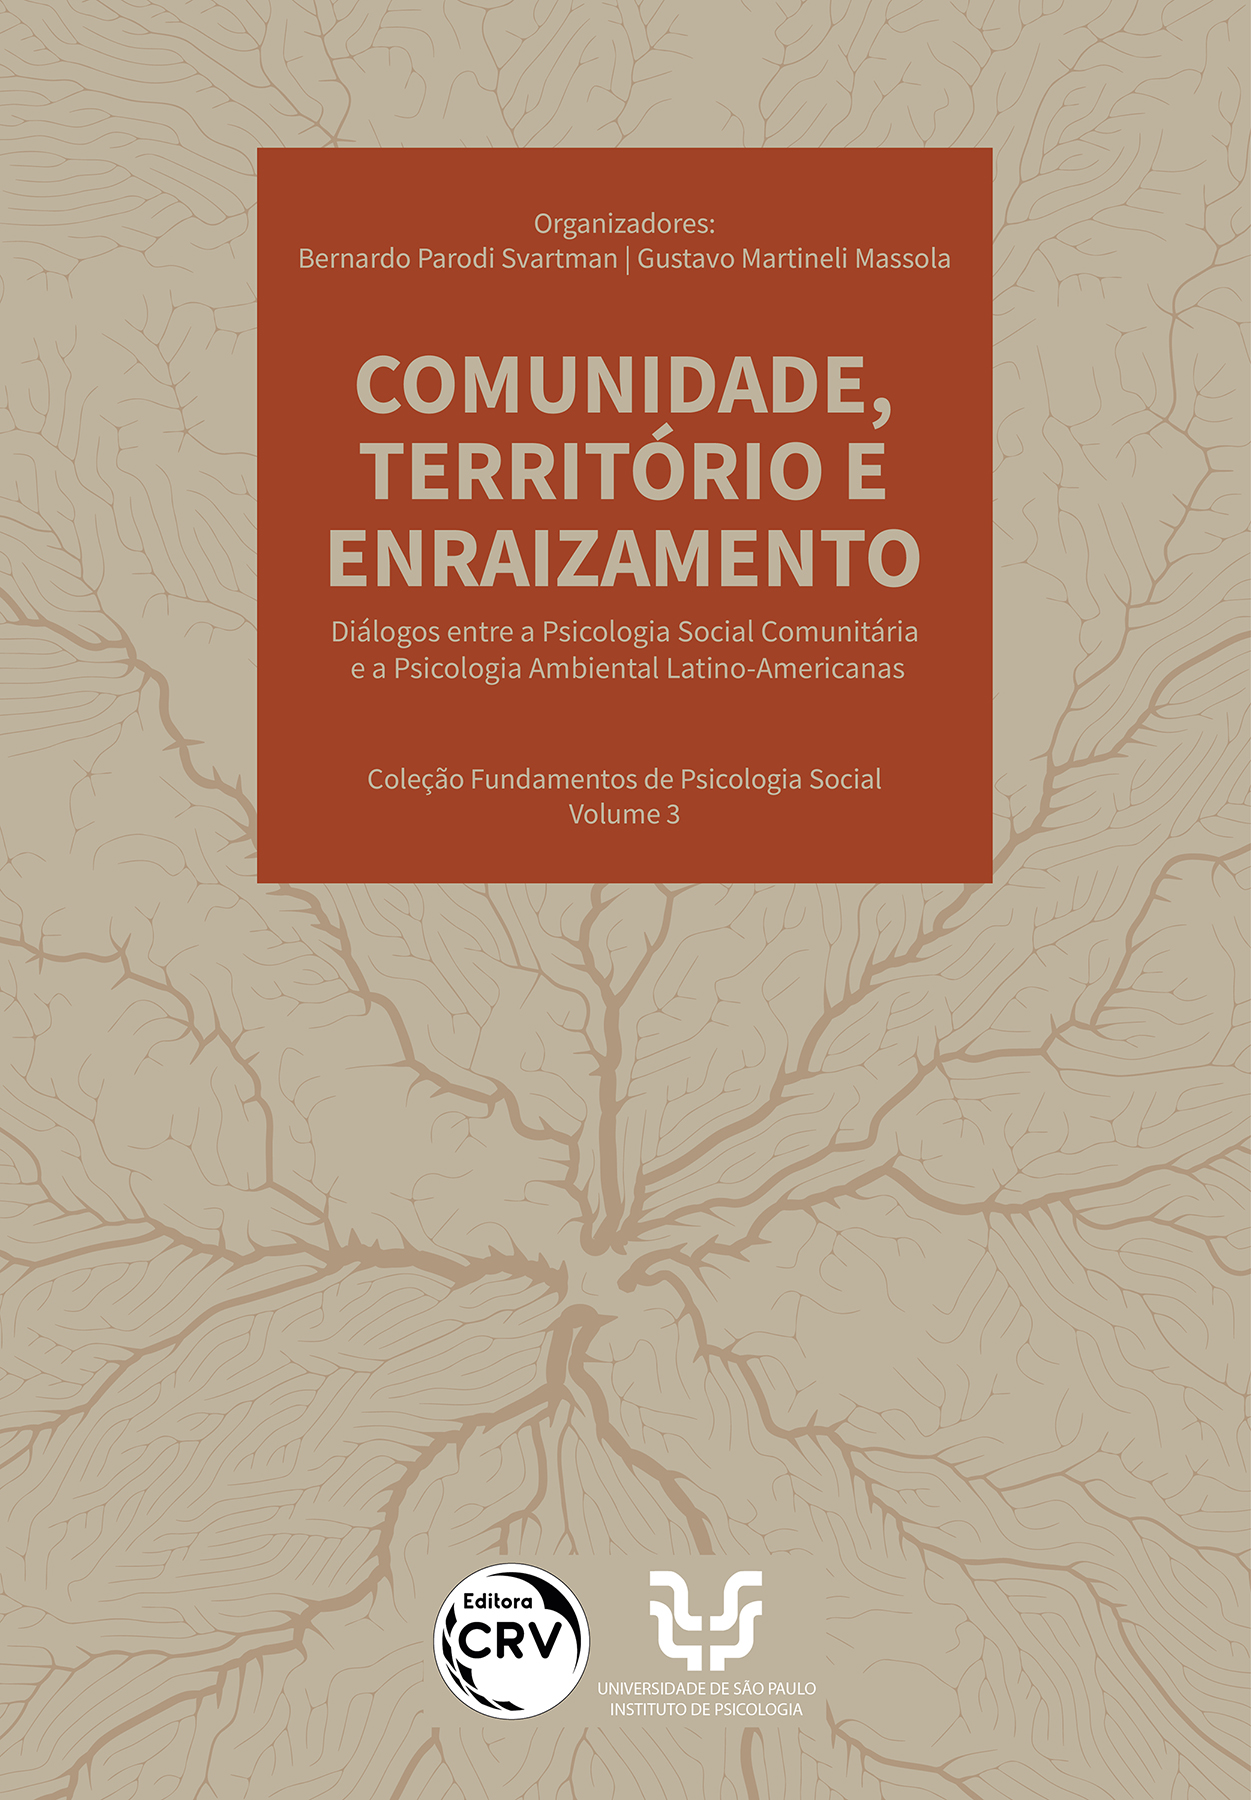 Capa do livro: Comunidade, território e enraizamento:<br> Uma introdução à psicologia comunitária e ambiental latino-americana